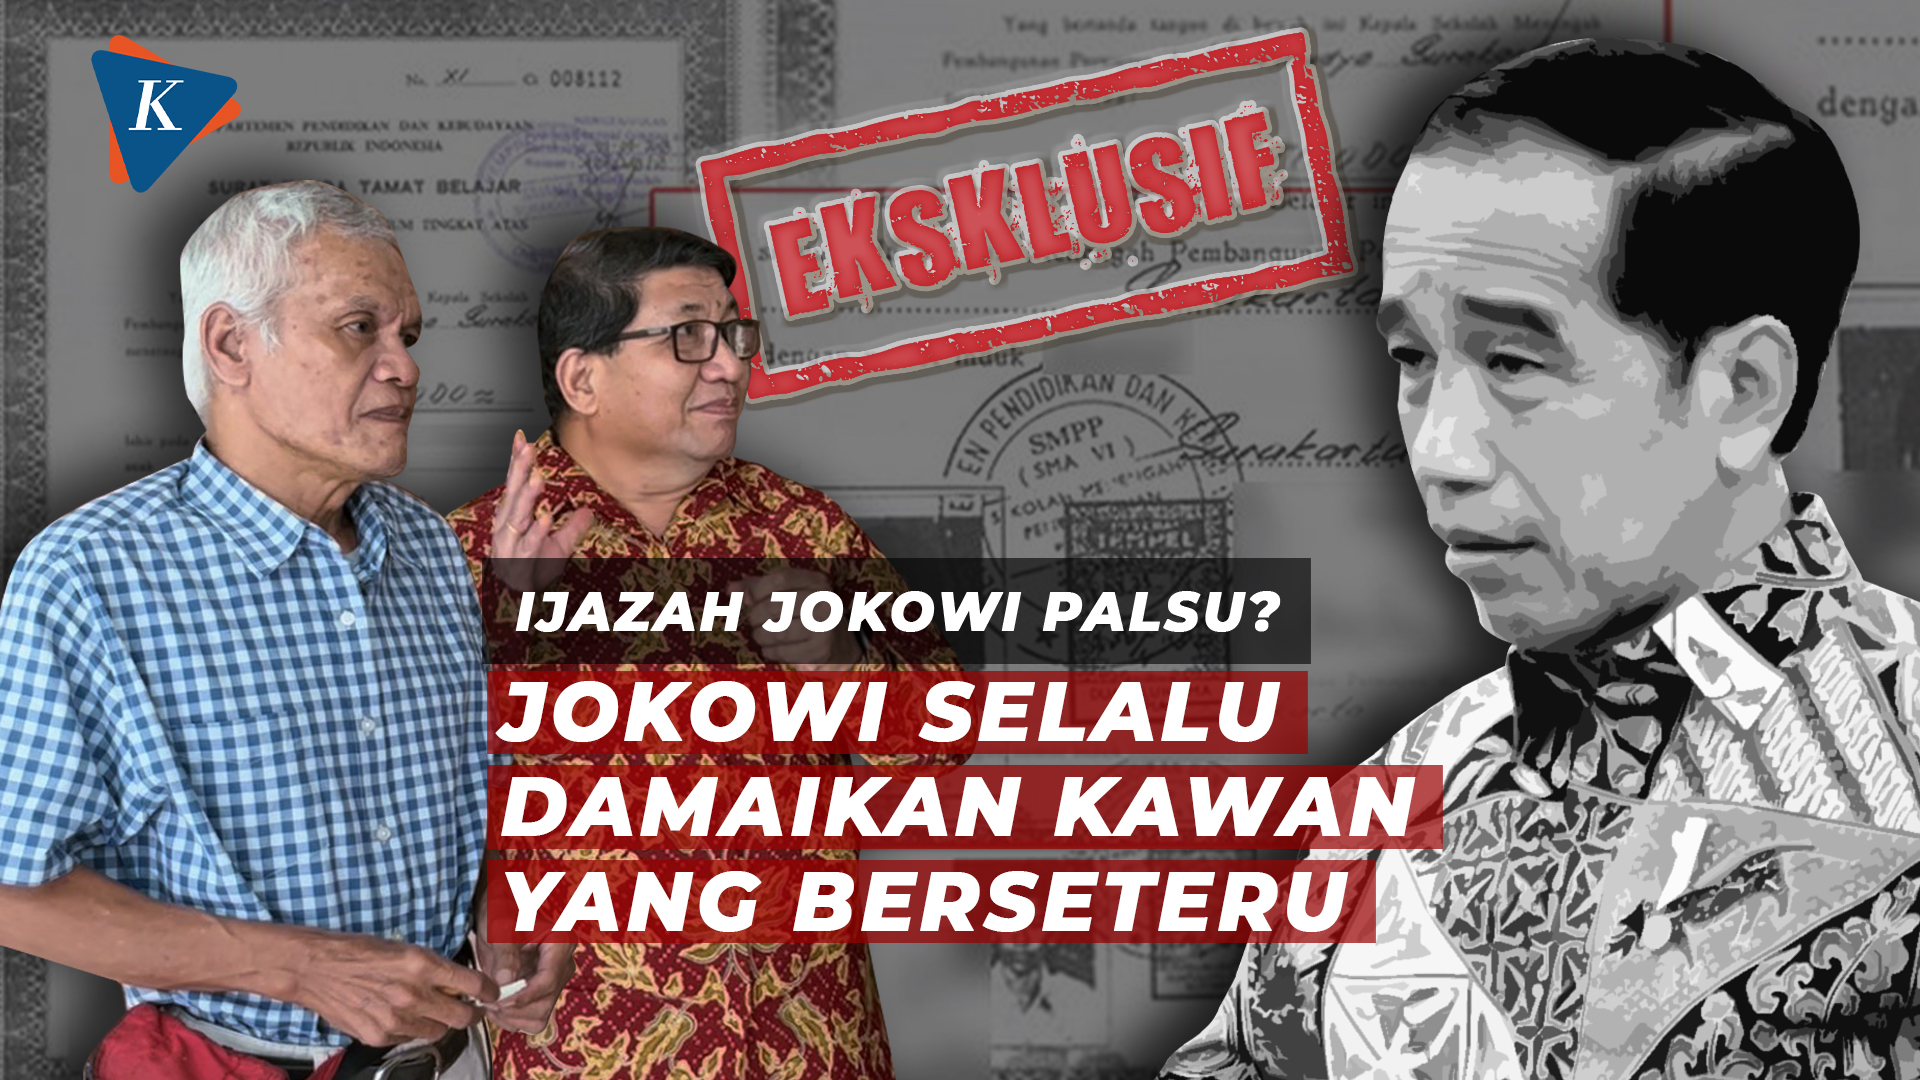 Kata Teman Kuliah, Jokowi Selalu Damaikan Kawan yang Berseteru